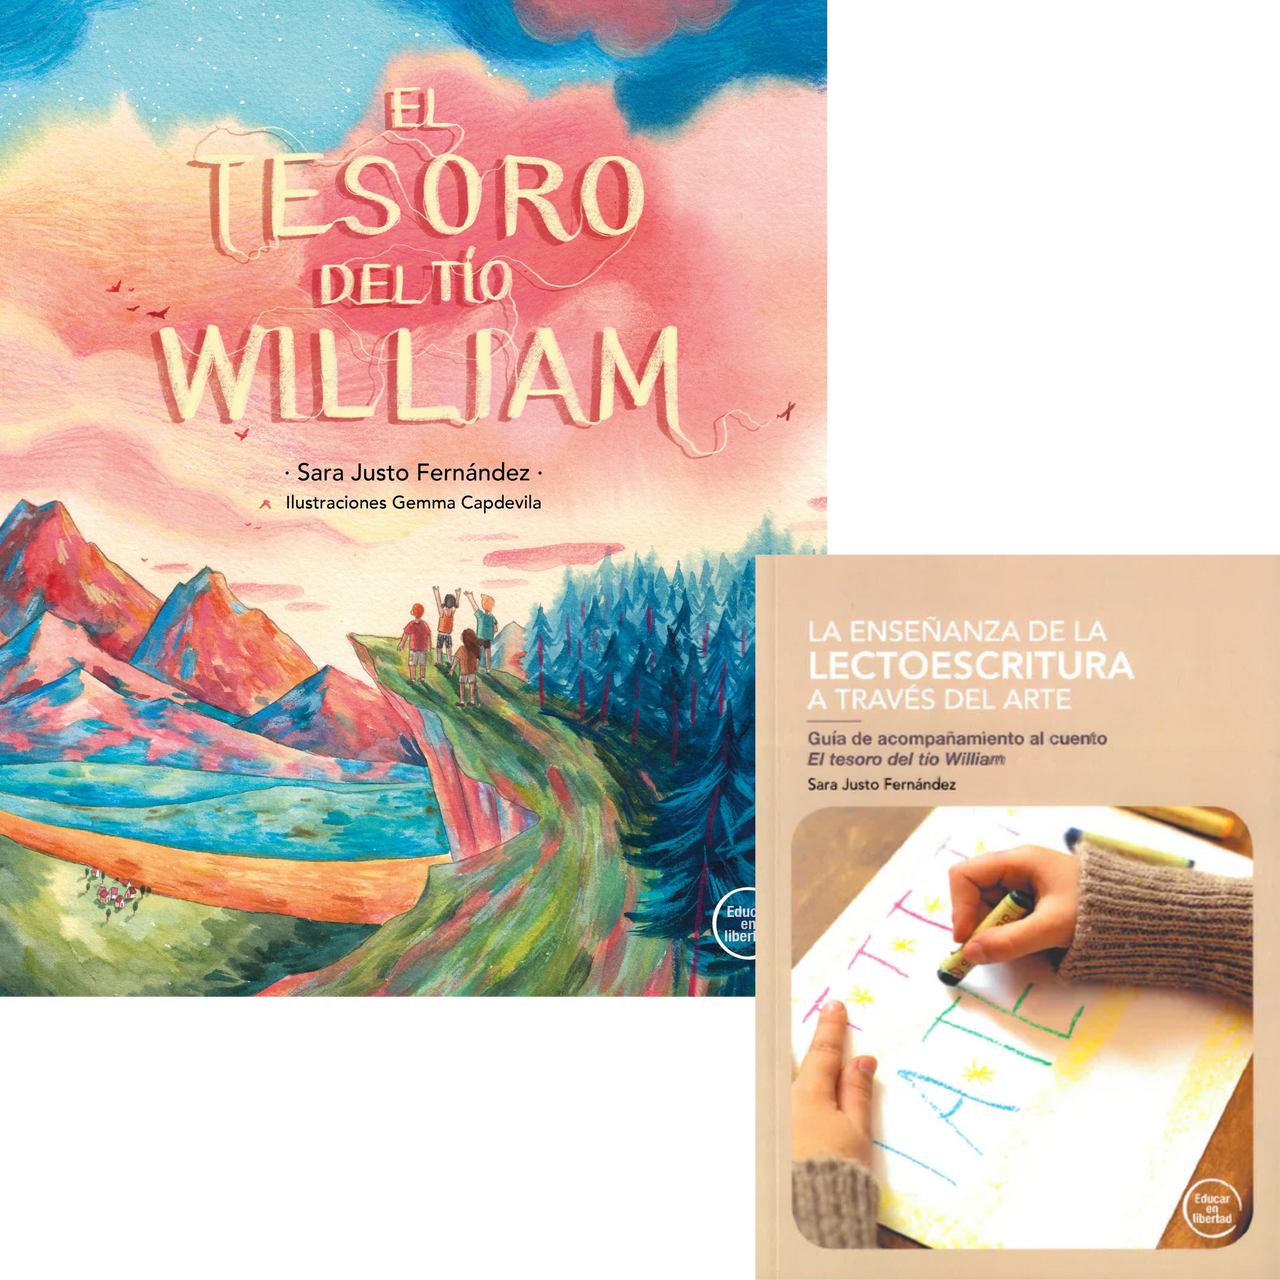 El tesoro del tío William + Guía de acompañamiento al cuento "La enseñanza de la lectoescritura a través del arte"